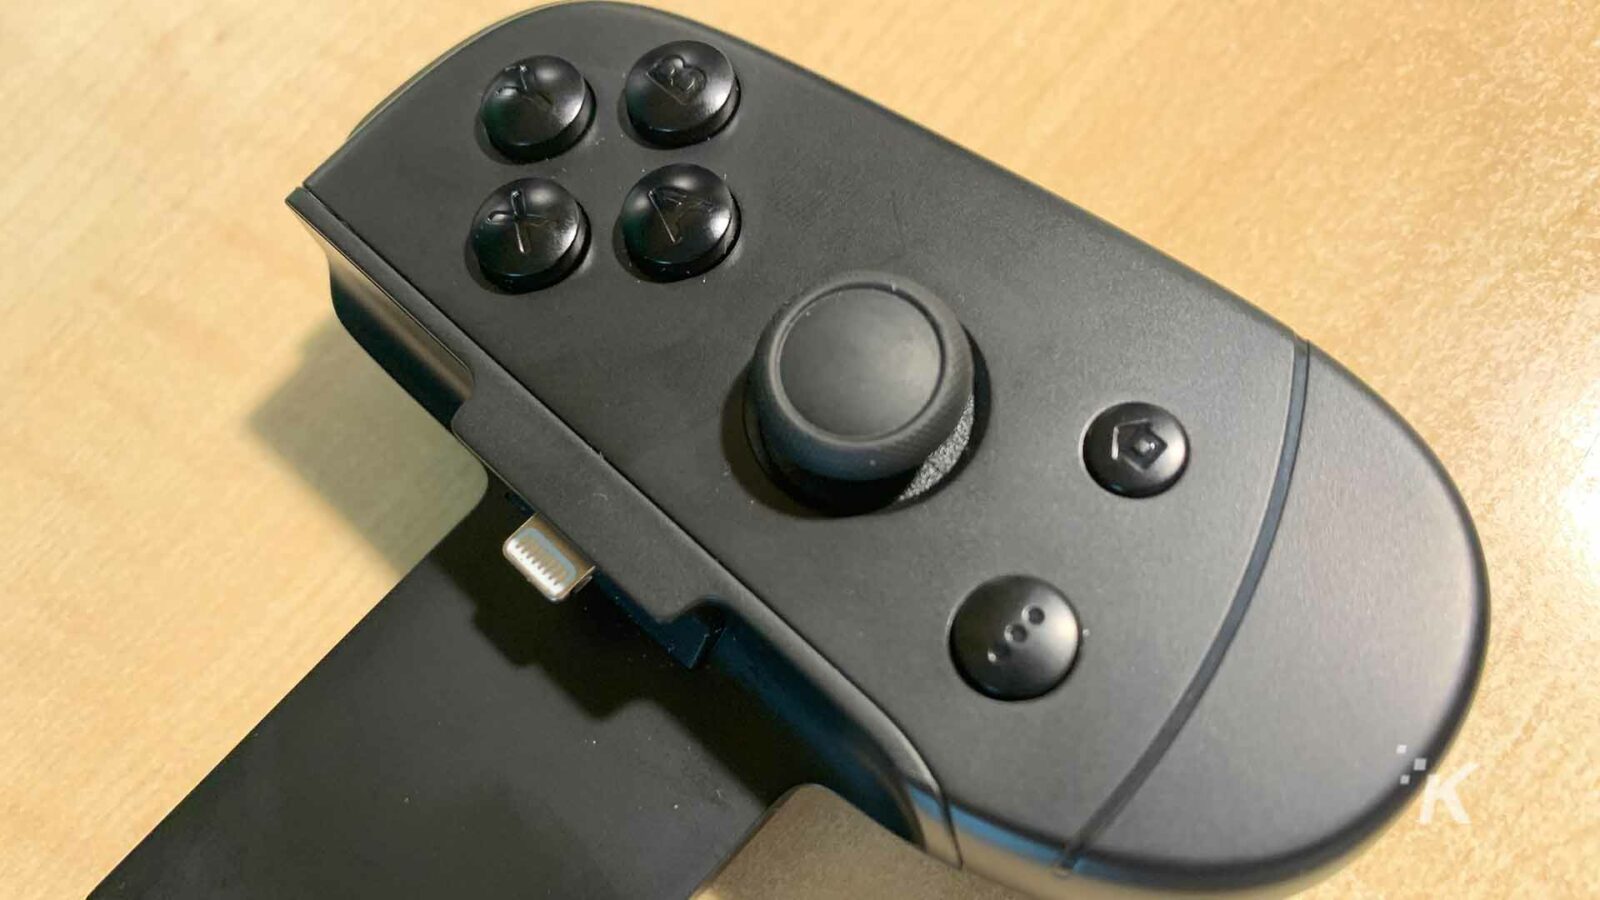 Pengontrol video game hitam sedang digunakan.